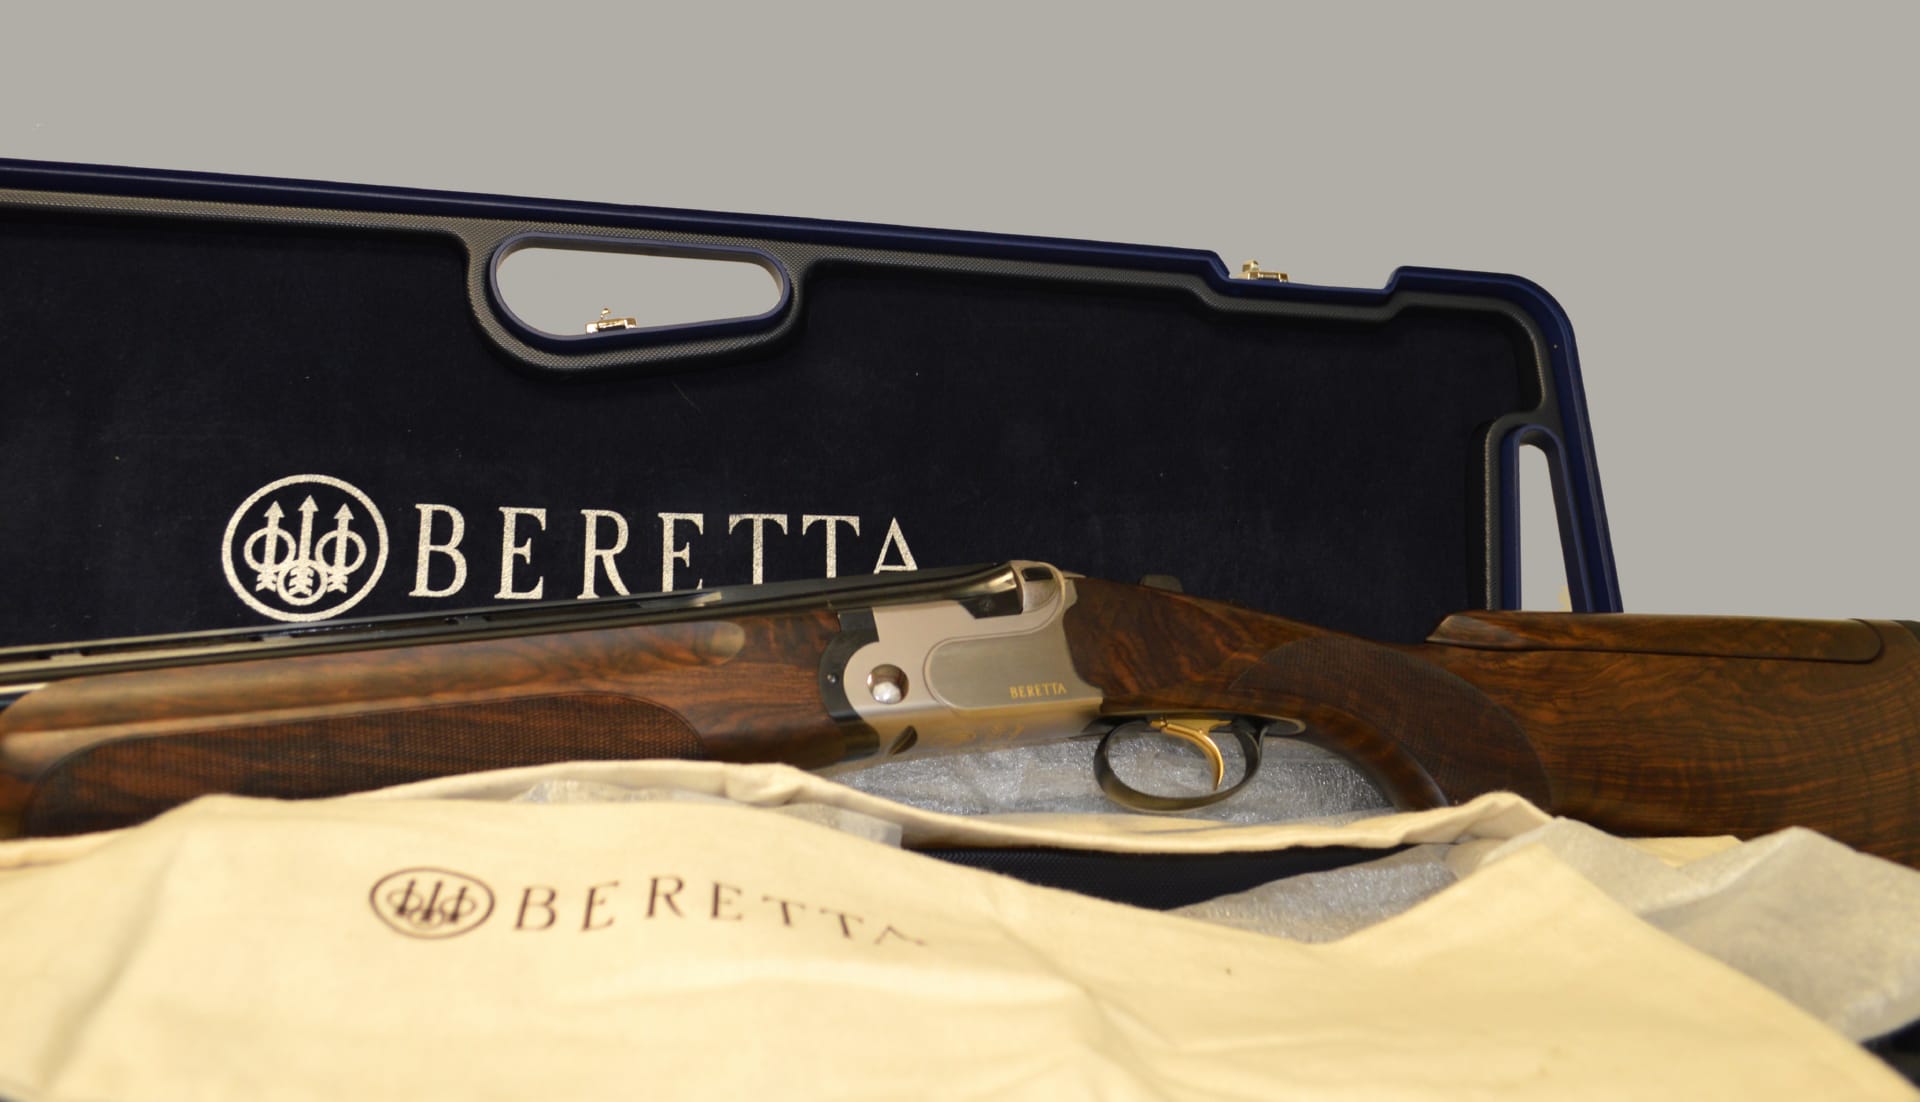 Beretta Shotgun at 1600 x 1200 size wallpapers HD quality